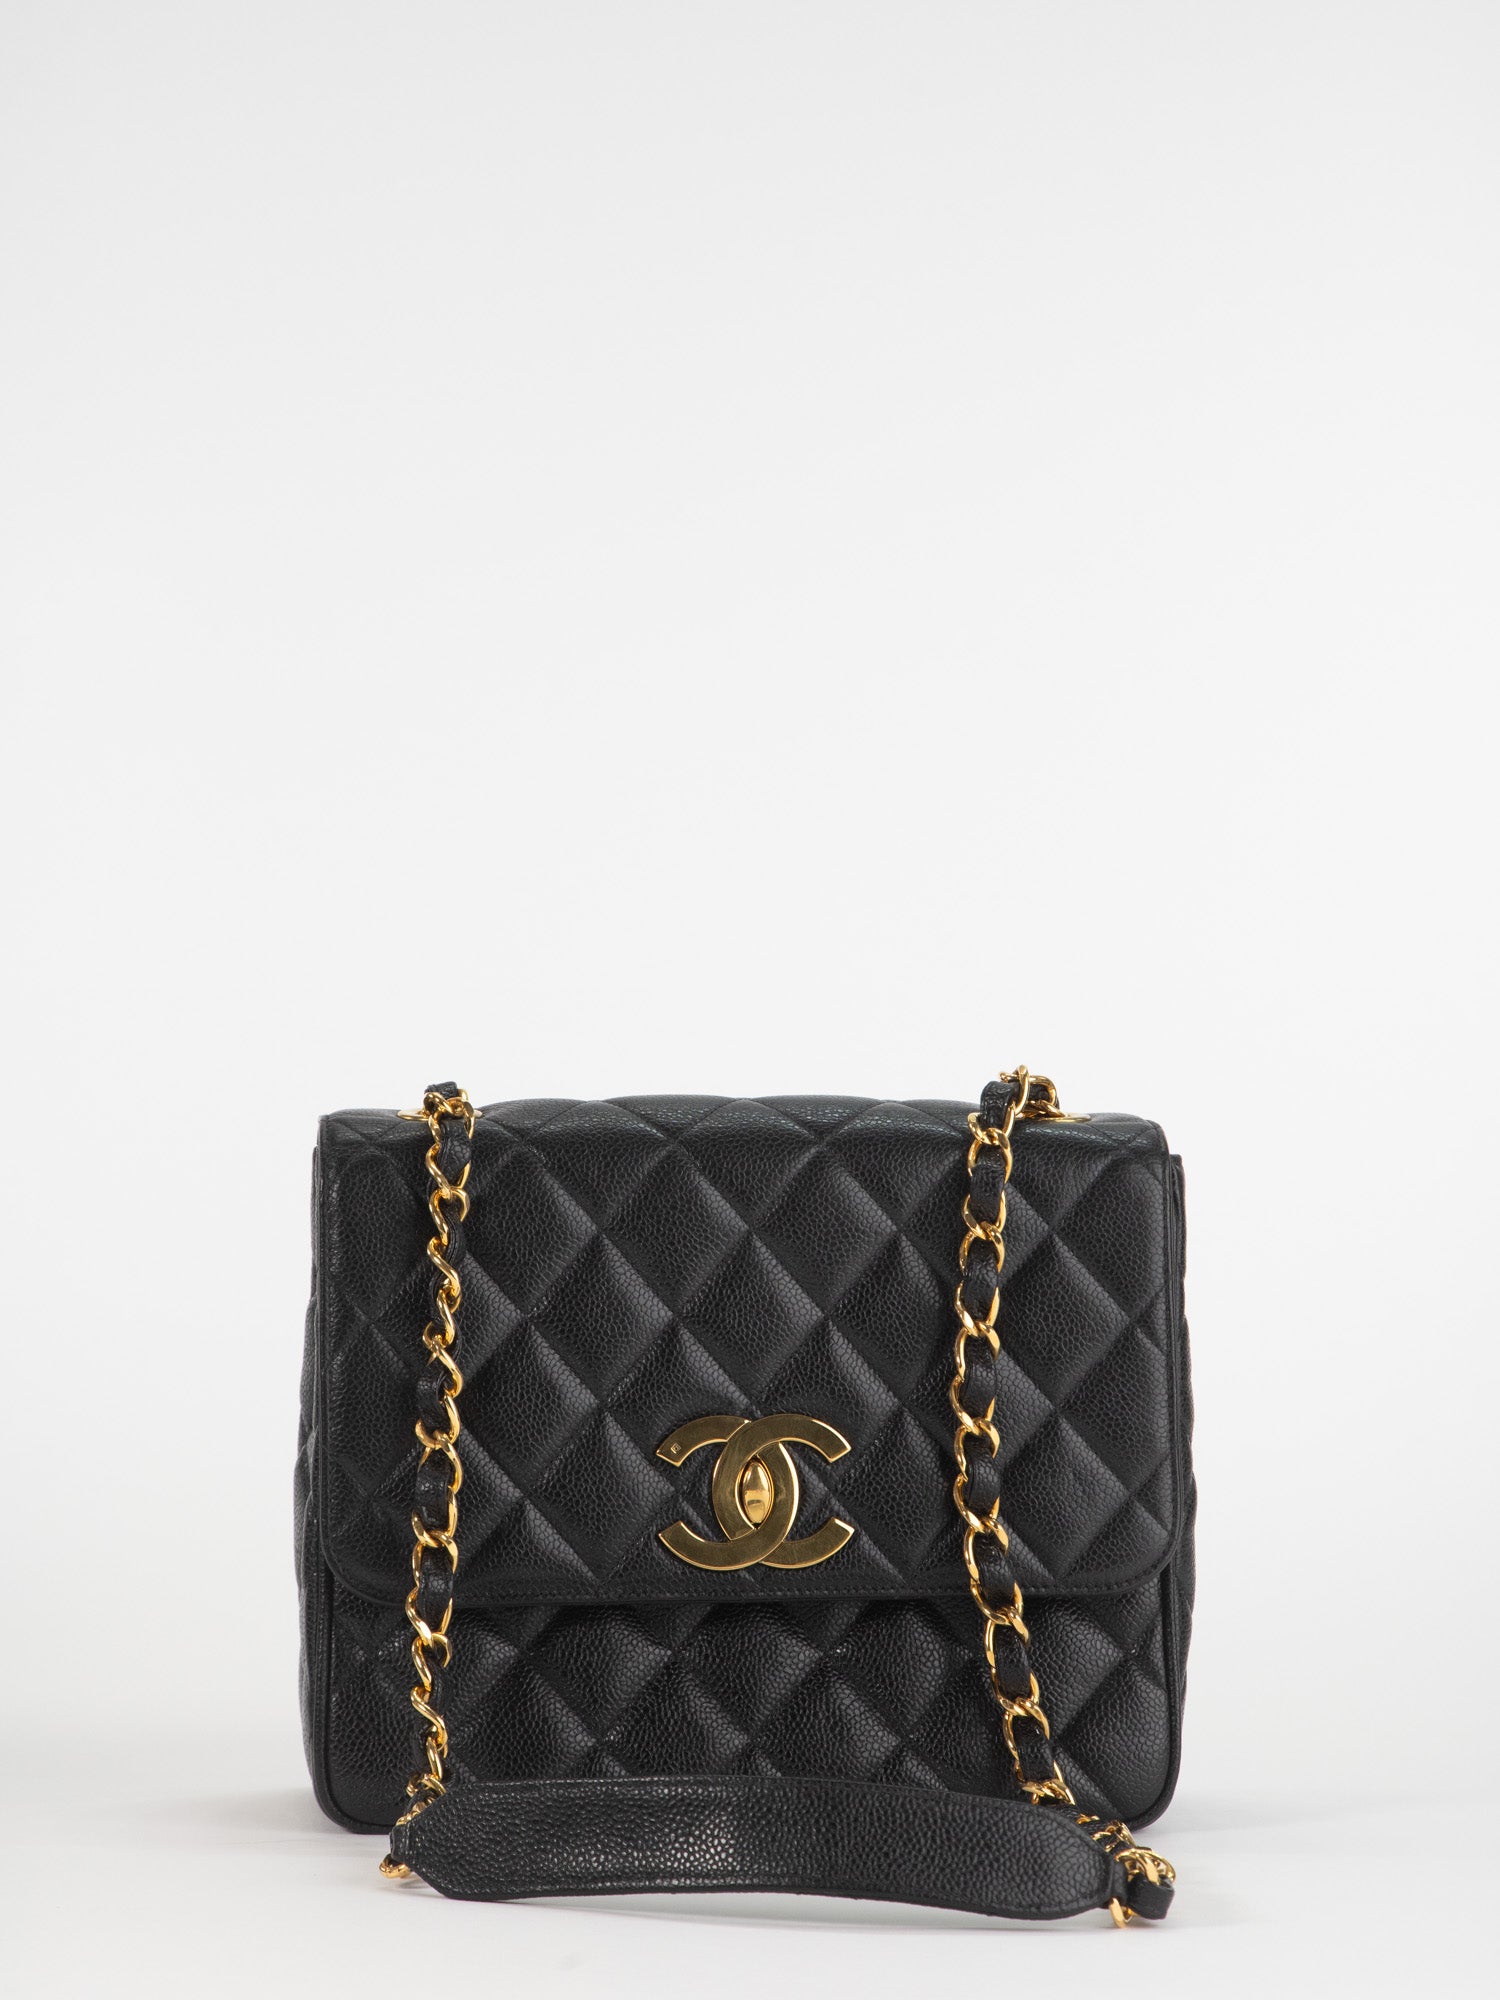 All Old Stuff - Chanel Vintage Ladies Shoulder Bag Caviar Skin Black